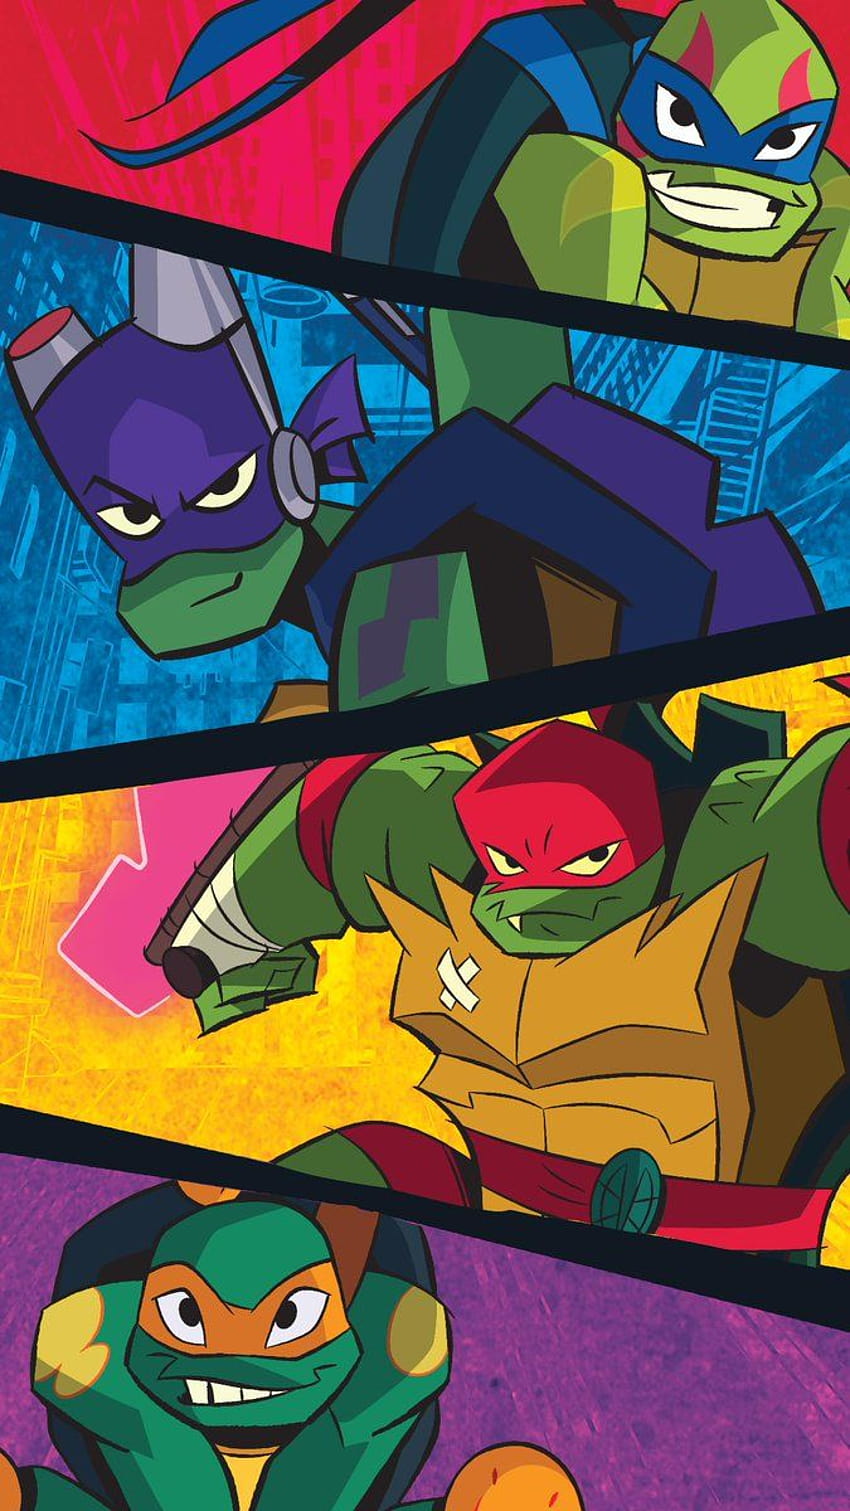 Rise of the Teenage Mutant Ninja Turtles on Behance  Teenage mutant ninja  turtles artwork Ninja turtles Ninja turtles artwork